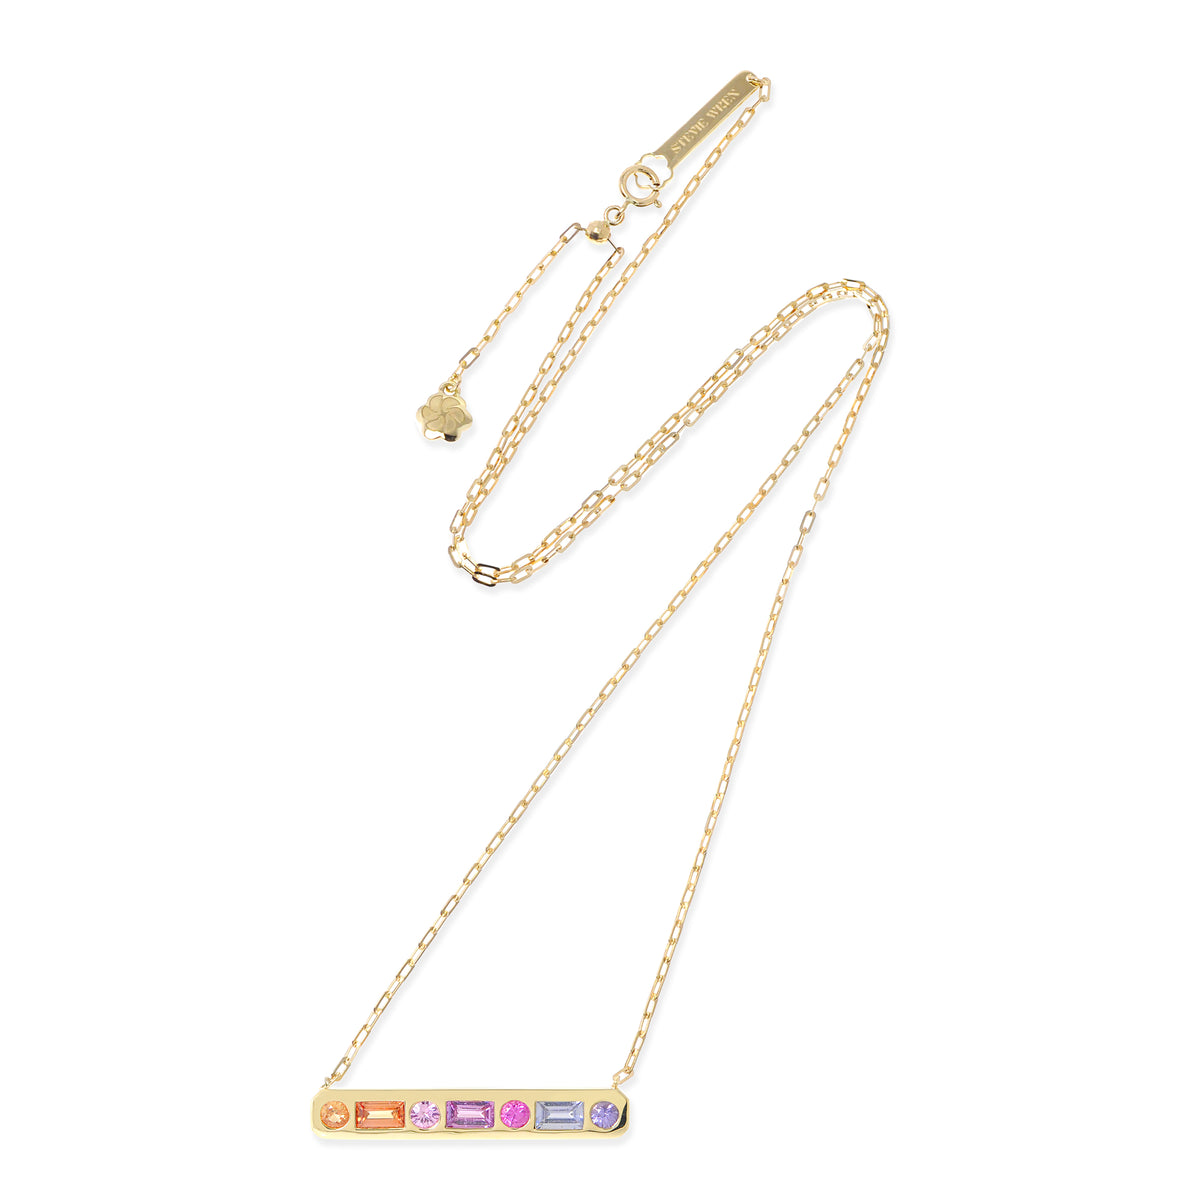 The Best Friend 18K Gemstone Bar Necklace